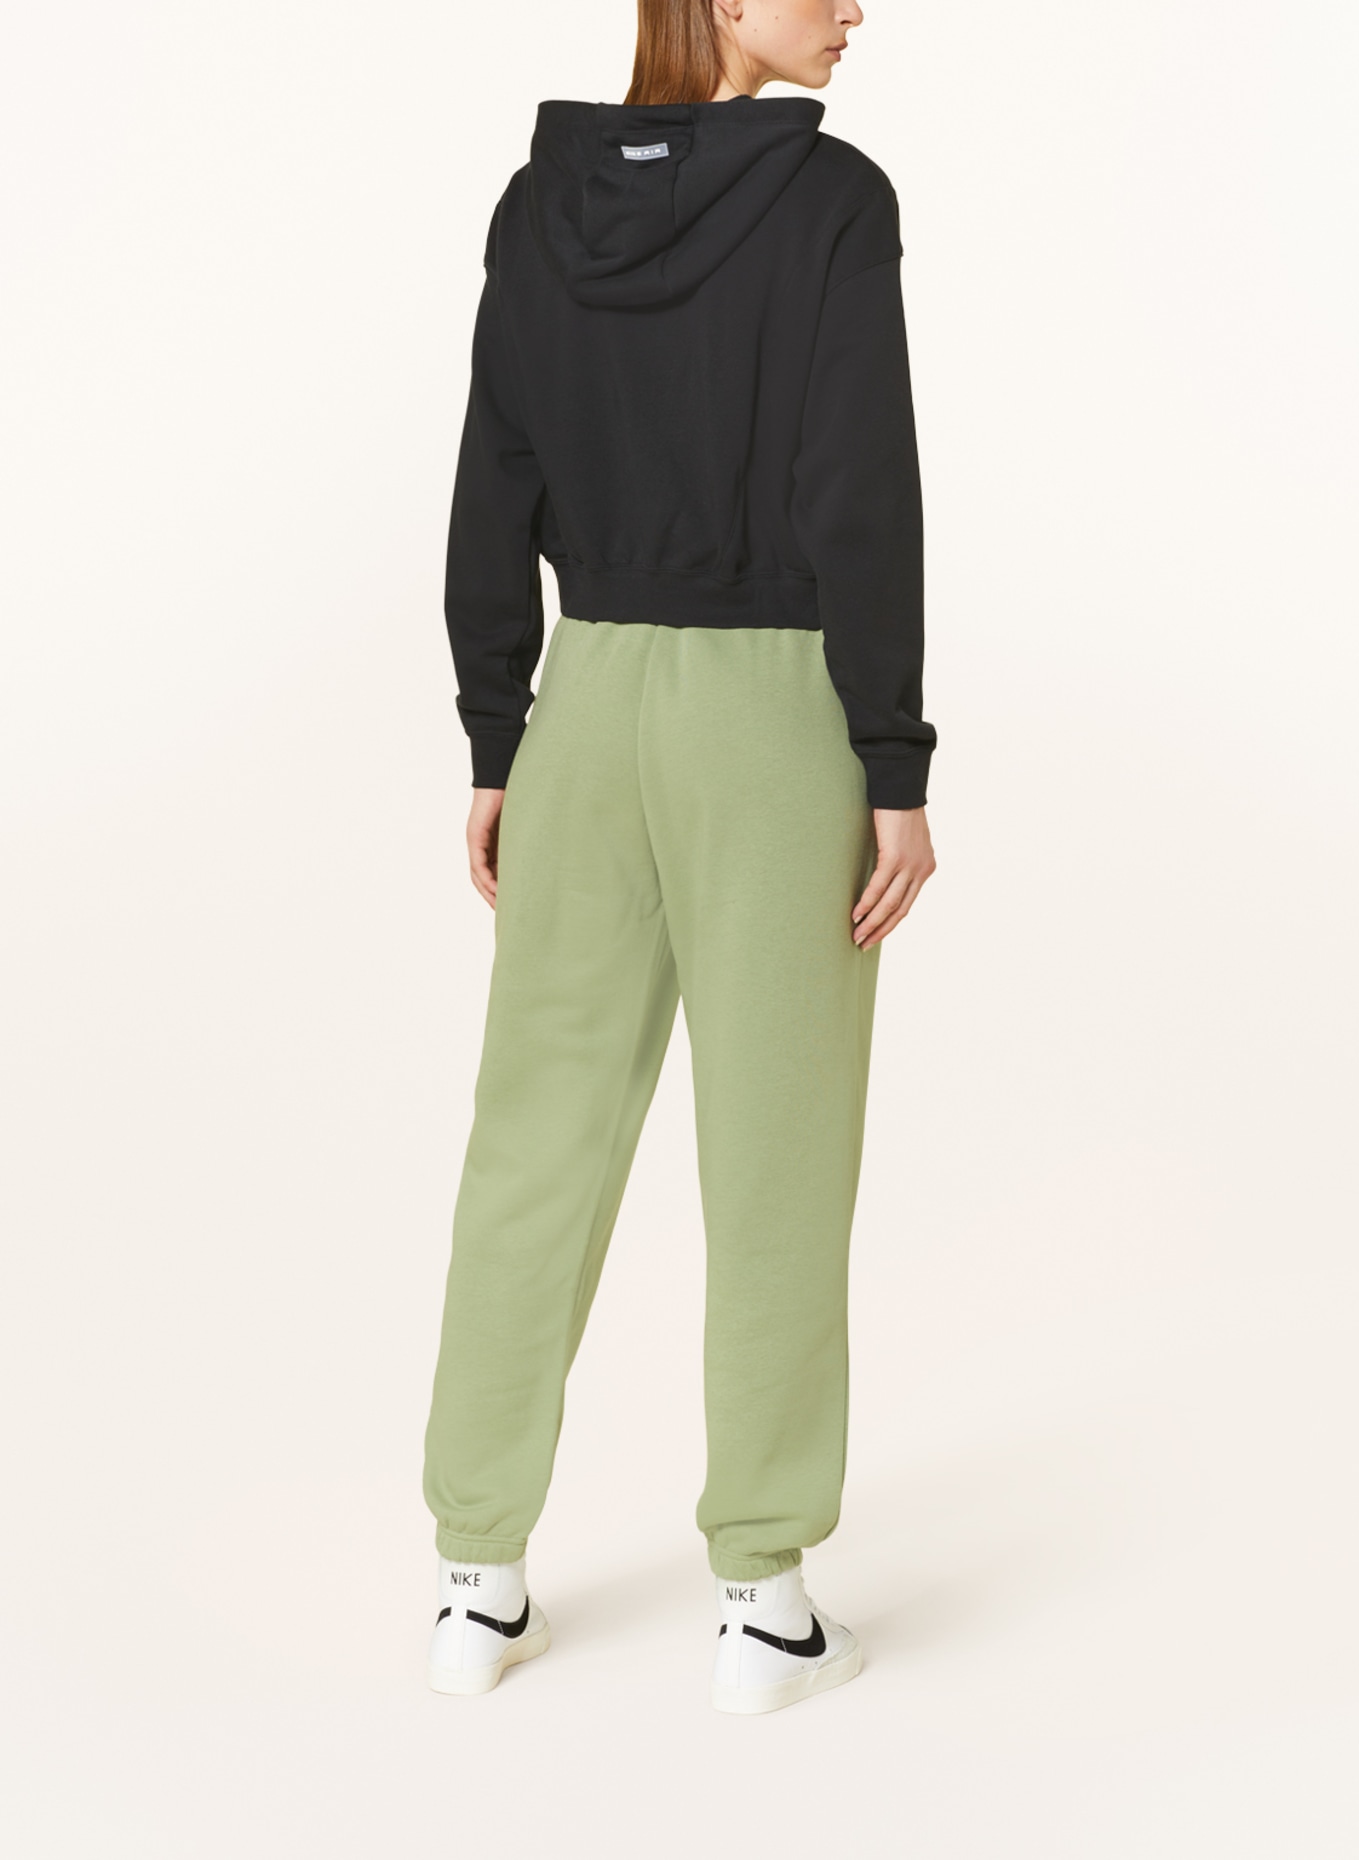 Nike Phoenix Sweatpants Green, Women